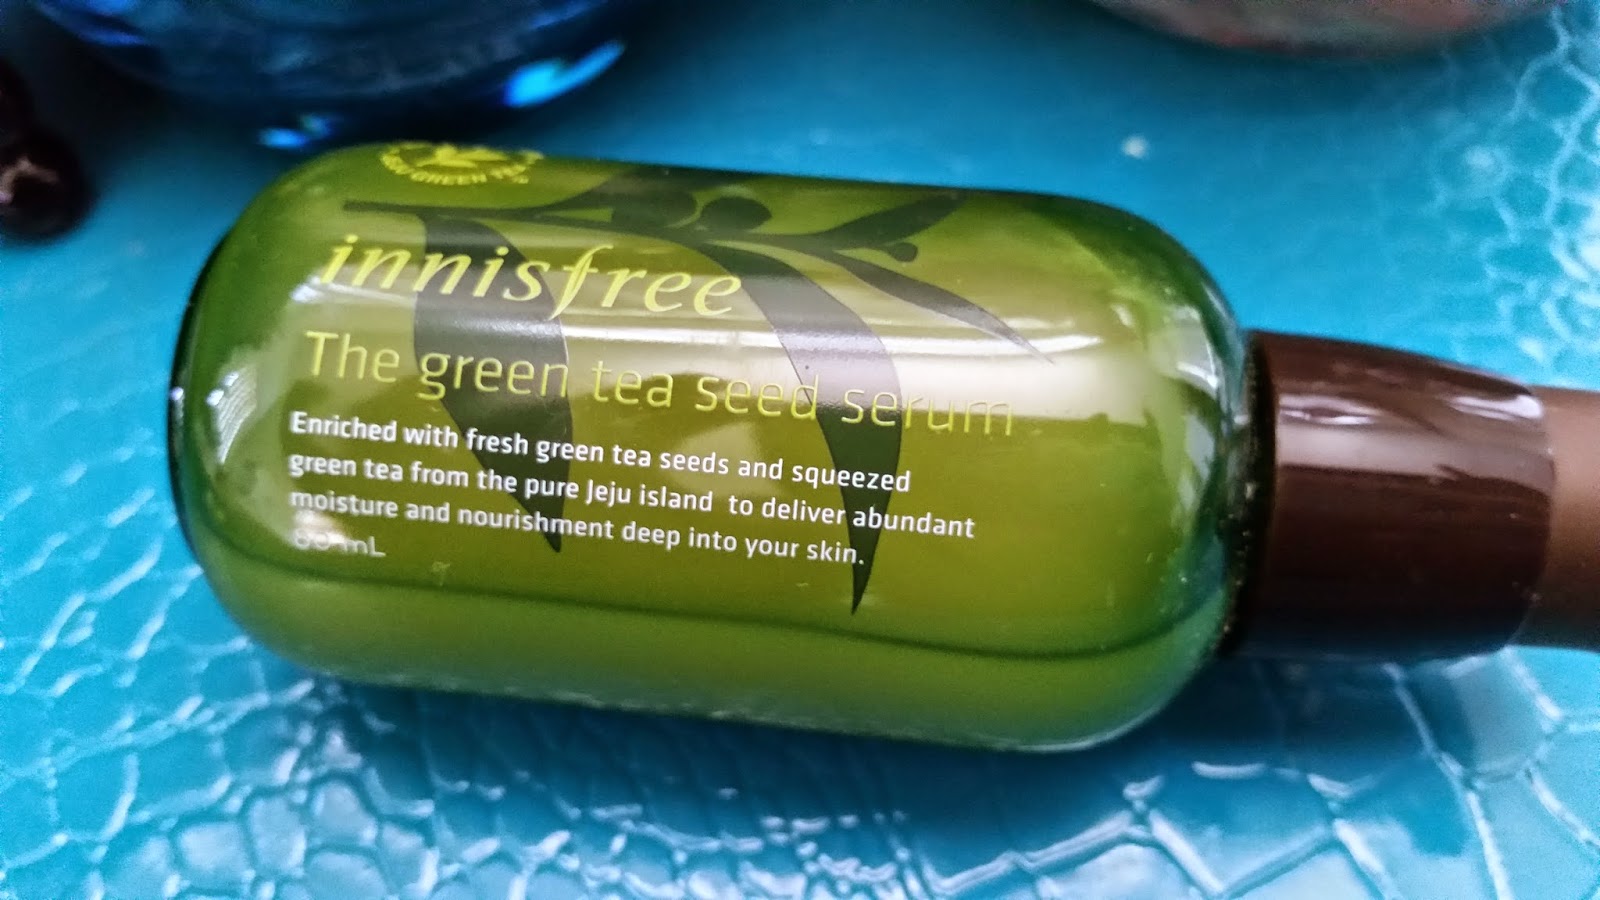 Innisfree Green Tea Seed serum packaging